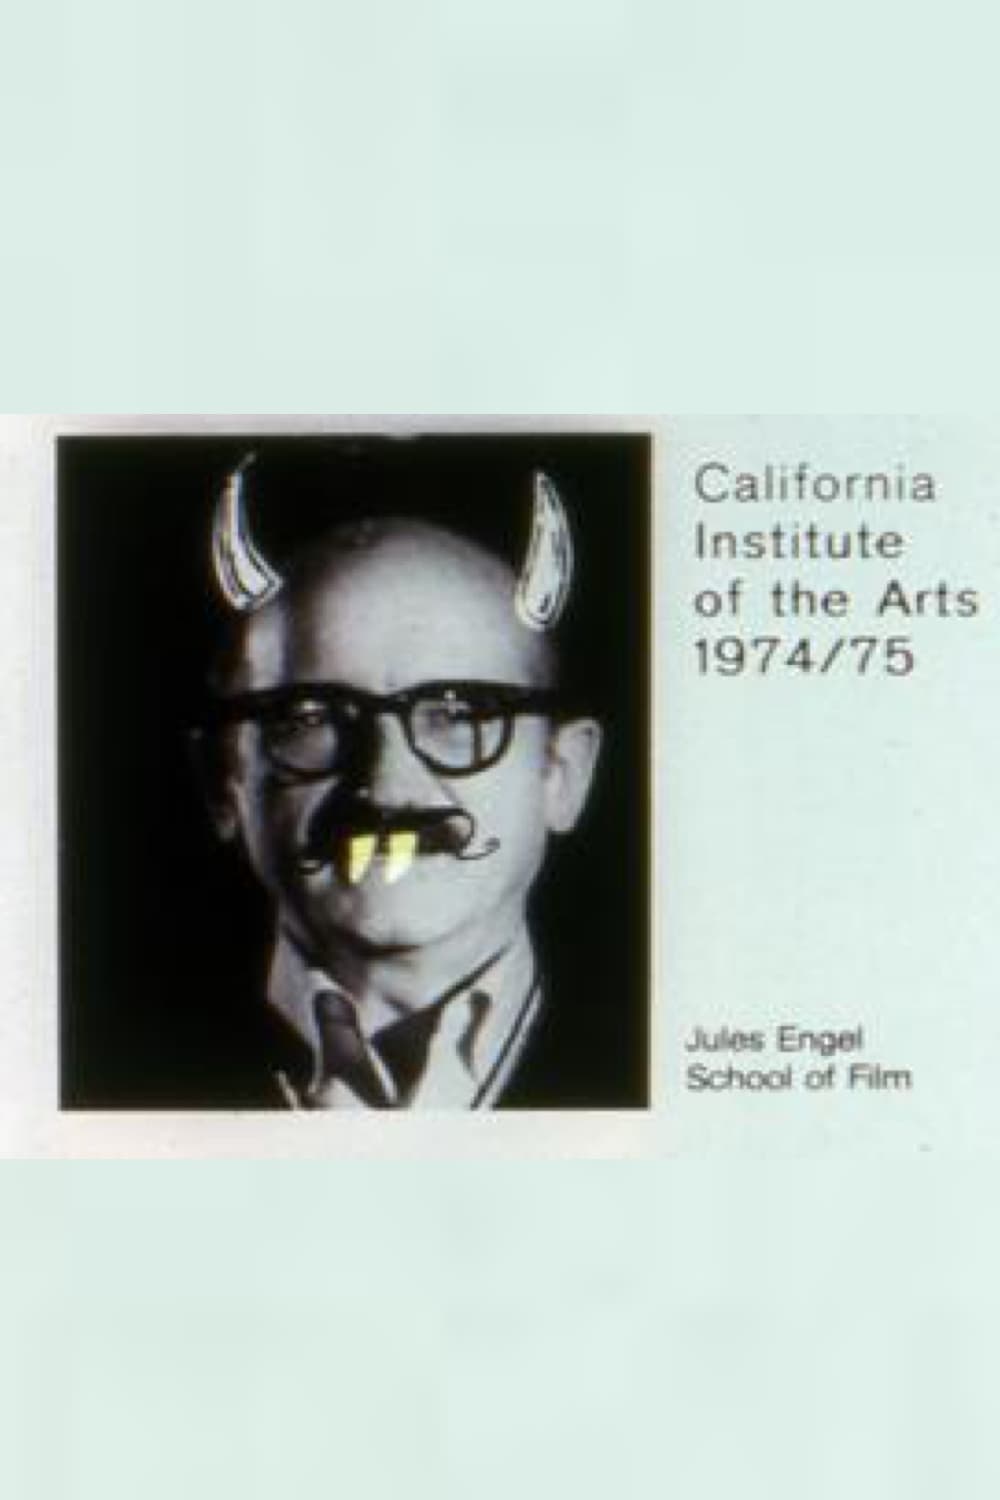 California Institute of the Arts 1974/75